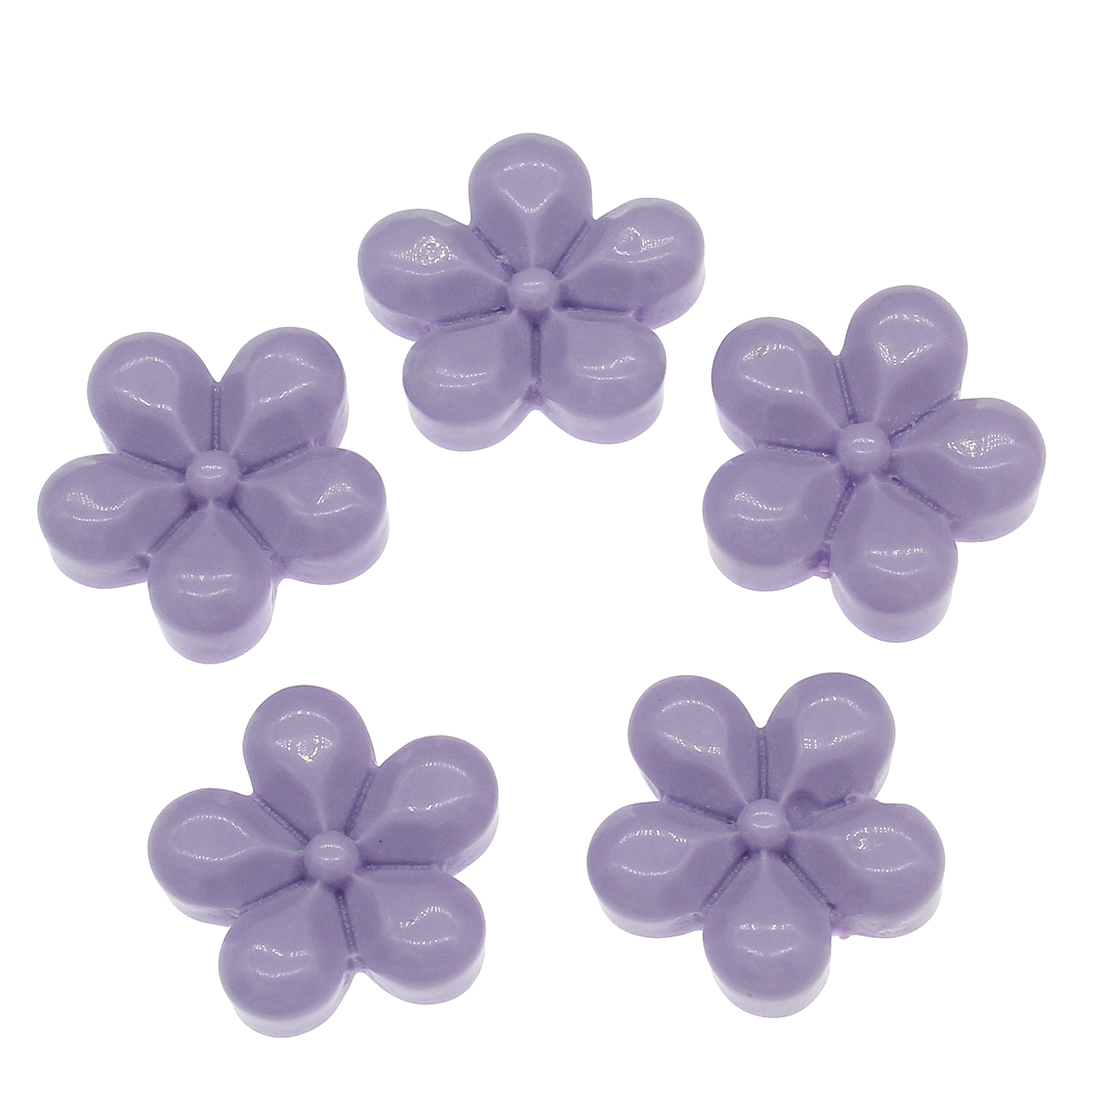  violett